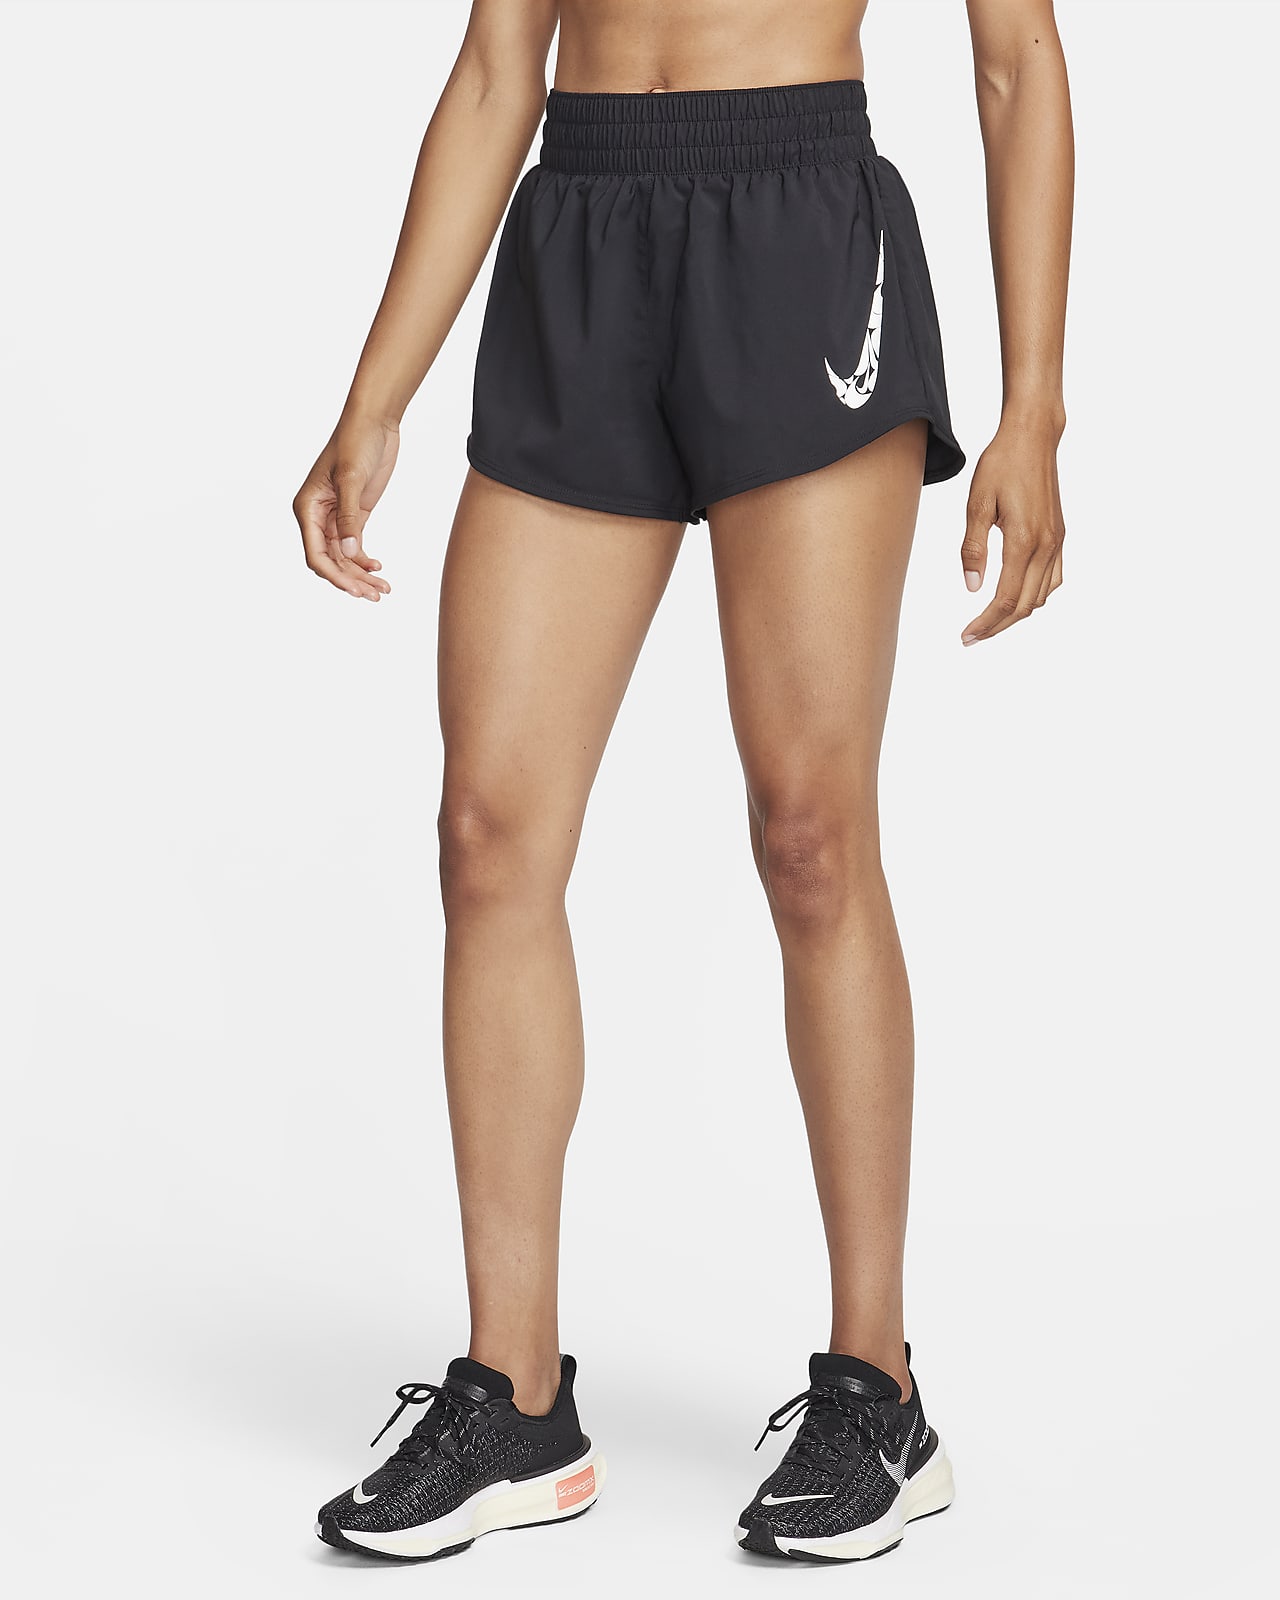 Nike One Pantalons curts Dri-FIT de cintura mitjana amb eslip incorporat de 8 cm - Dona